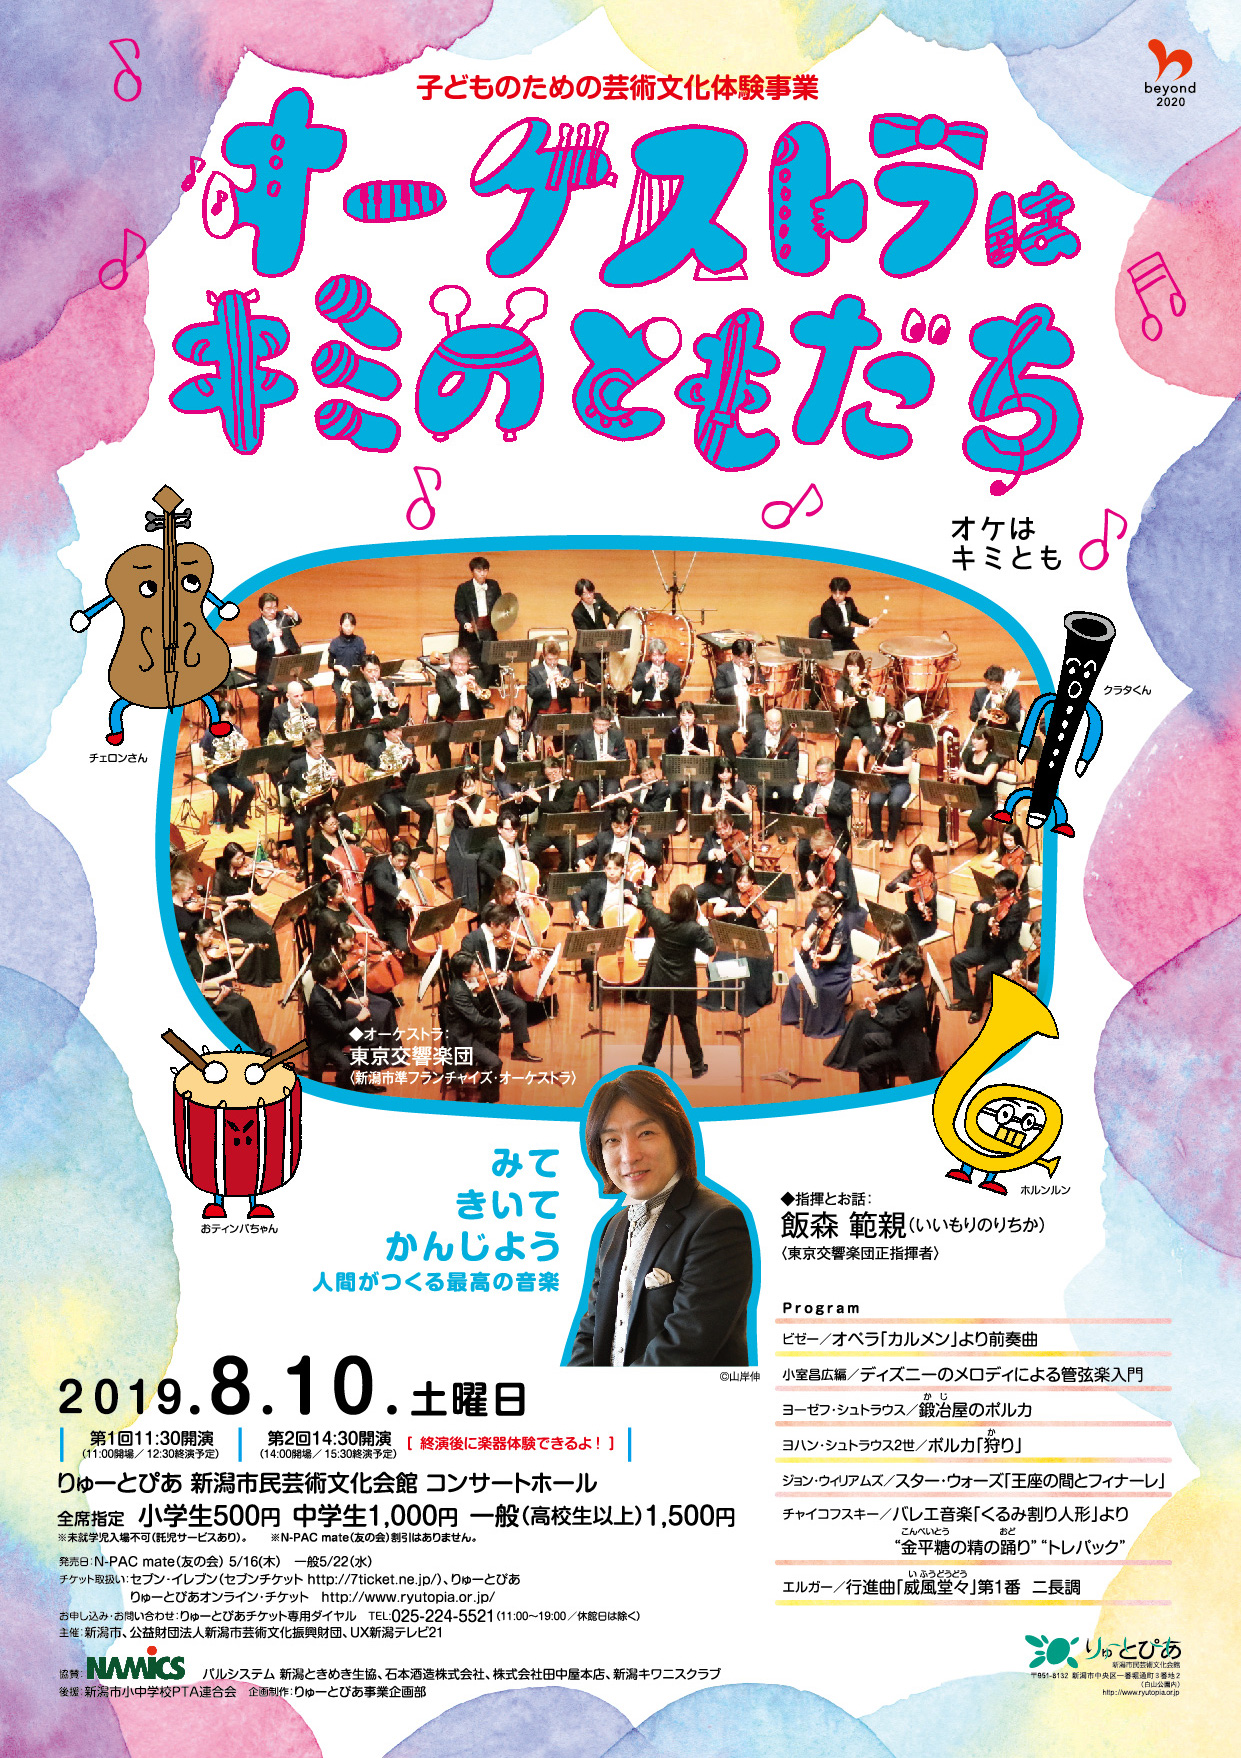 オーケストラはキミのともだち 19 公演情報 りゅーとぴあ 新潟市民芸術文化会館